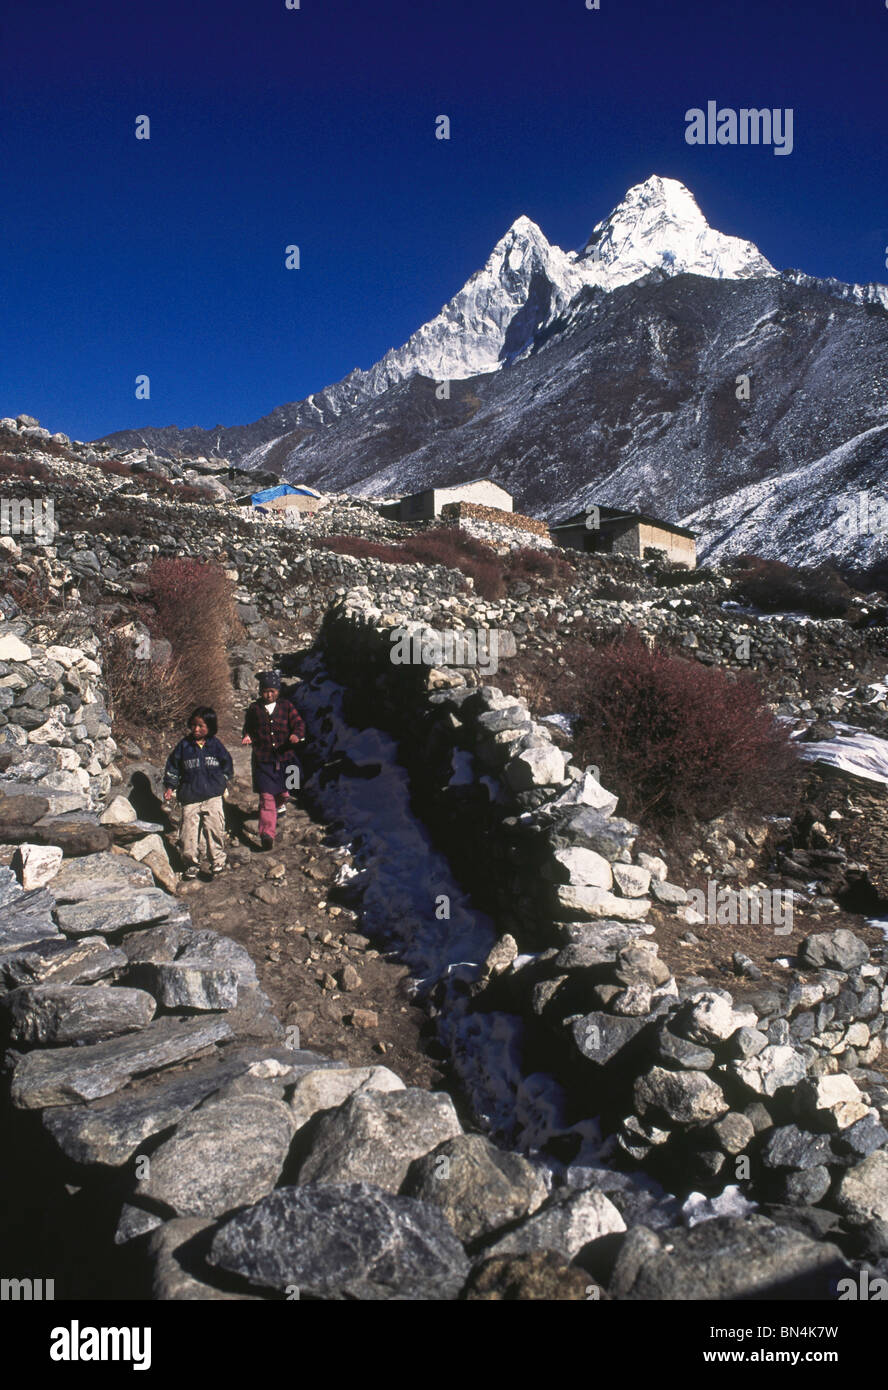 Dorfbewohner Trecke zwischen Trekking und Shomare mit dem Hintergrund des Ama Dablam Peak; Khumbu-Tal; Everest-Region; Nepal Stockfoto